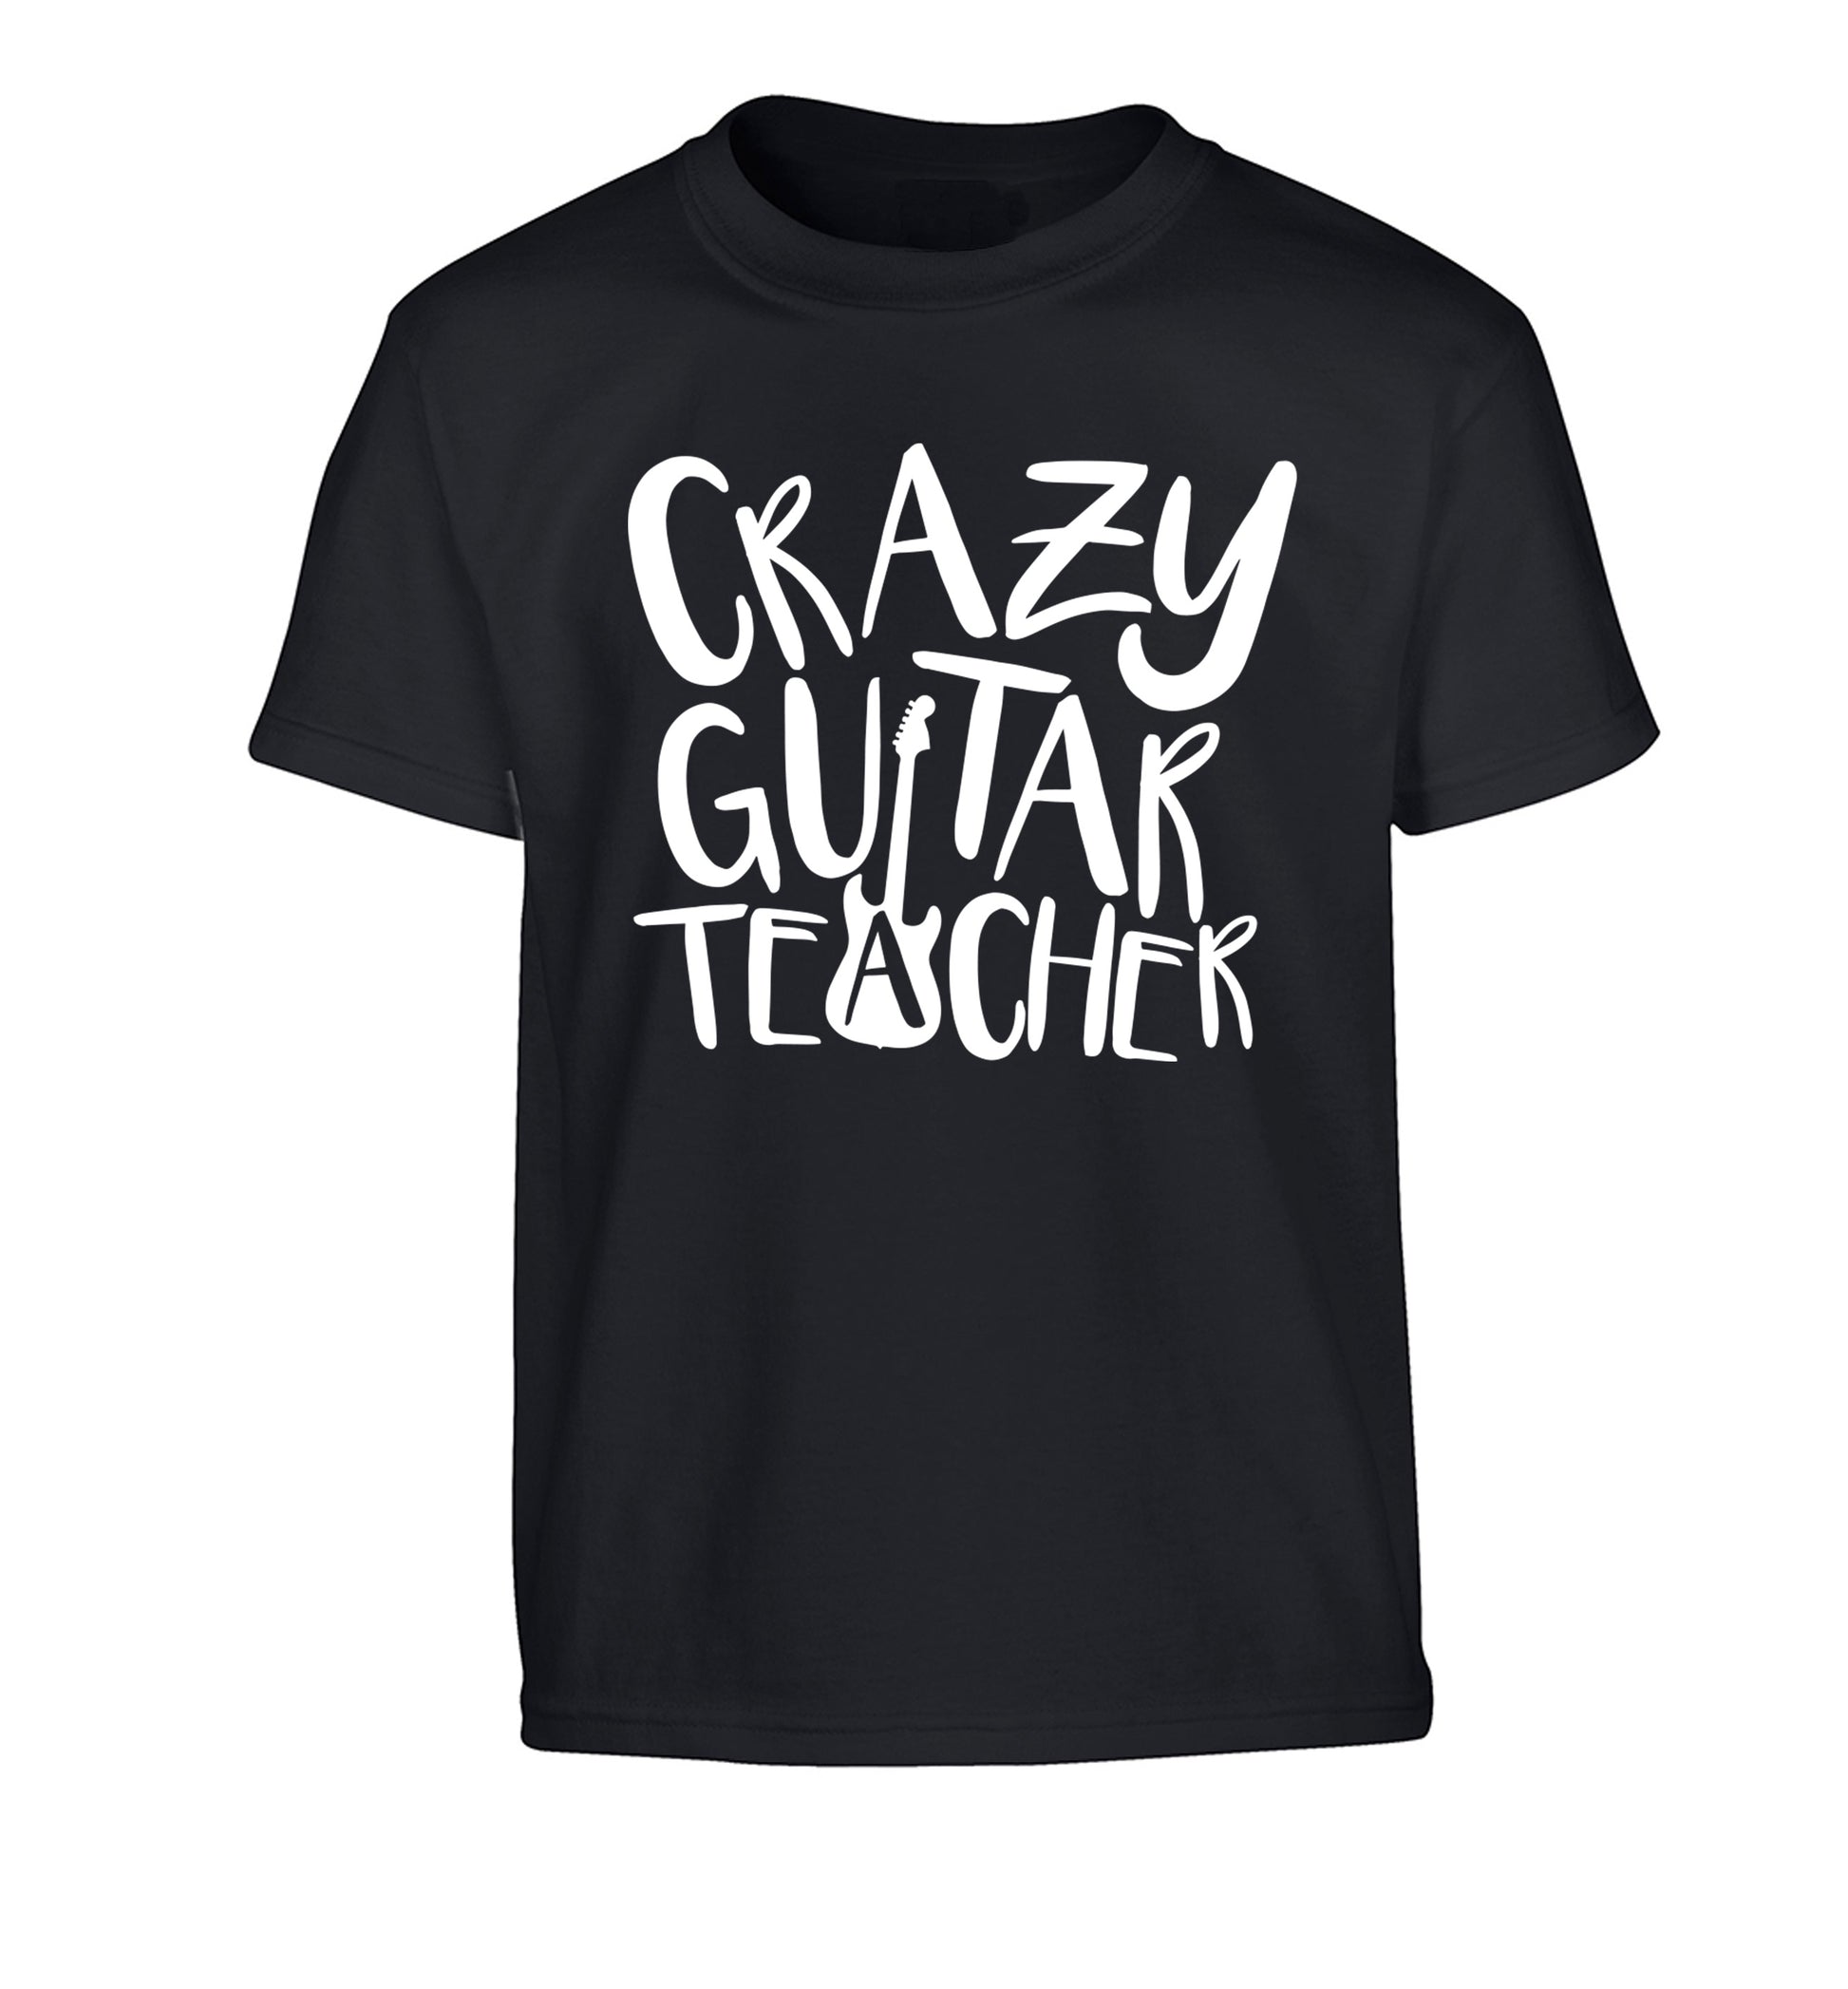 Crazy guitar teacher Children's black Tshirt 12-13 Years